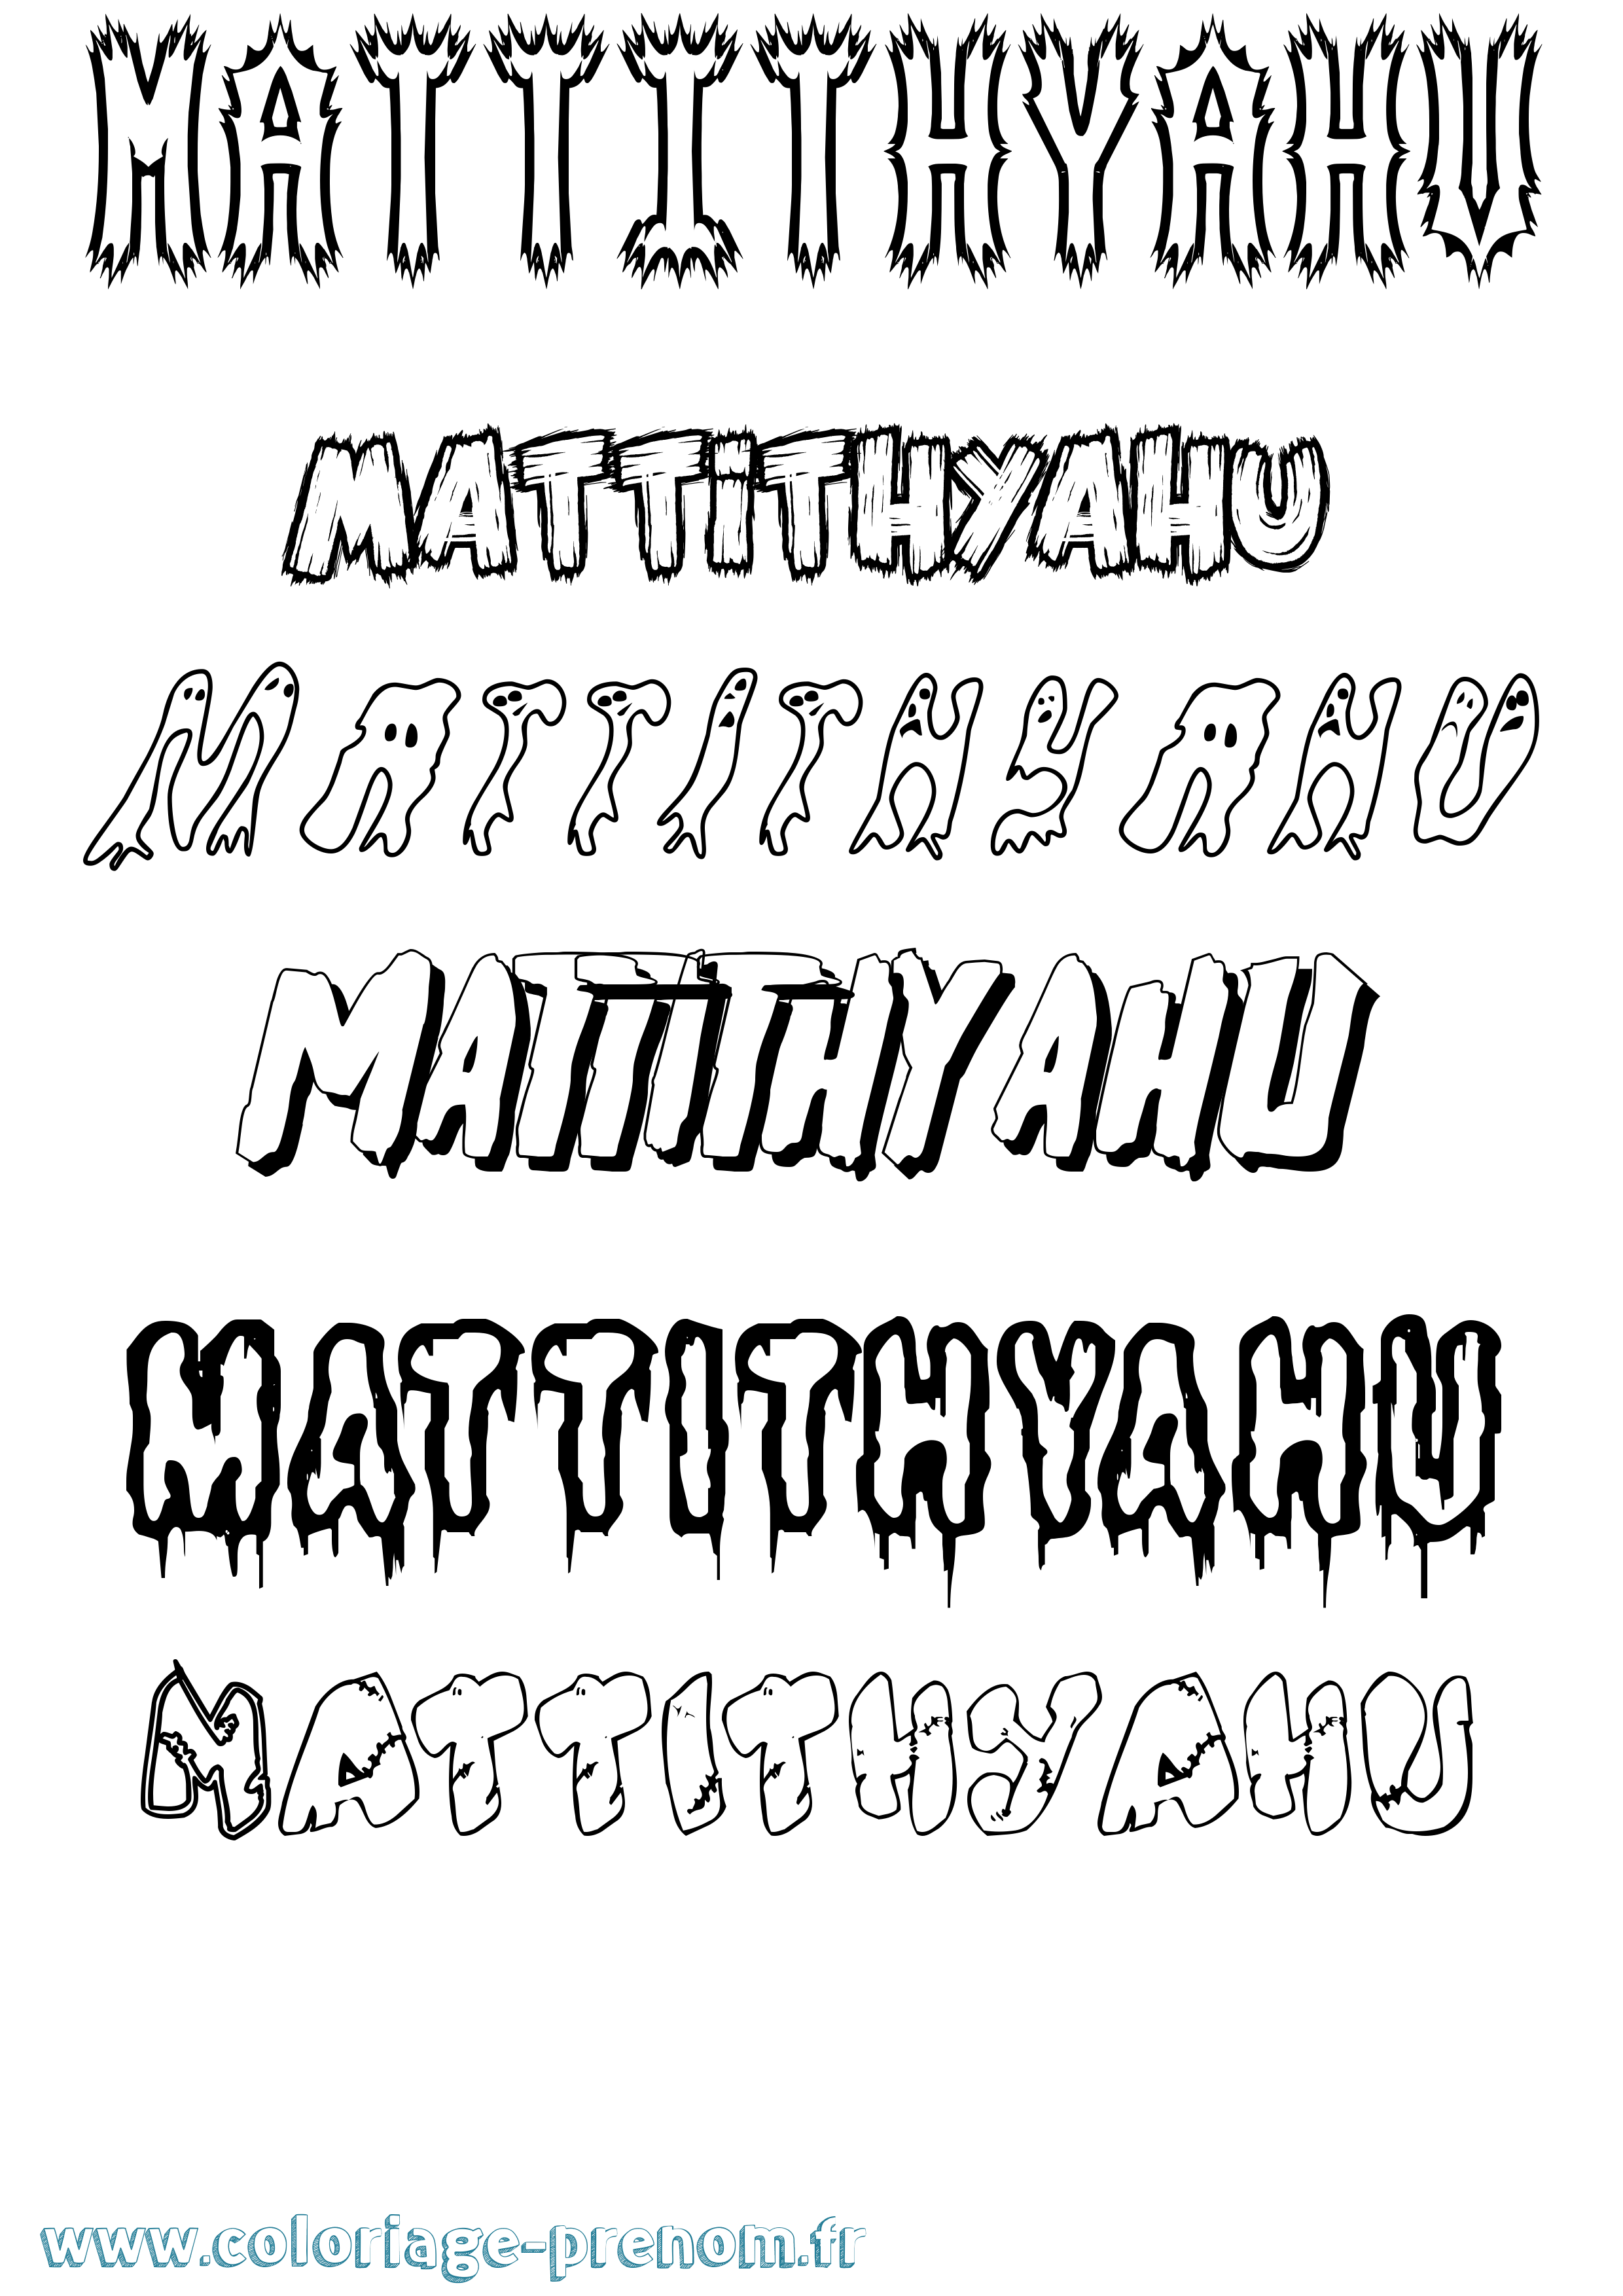 Coloriage prénom Mattithyahu Frisson